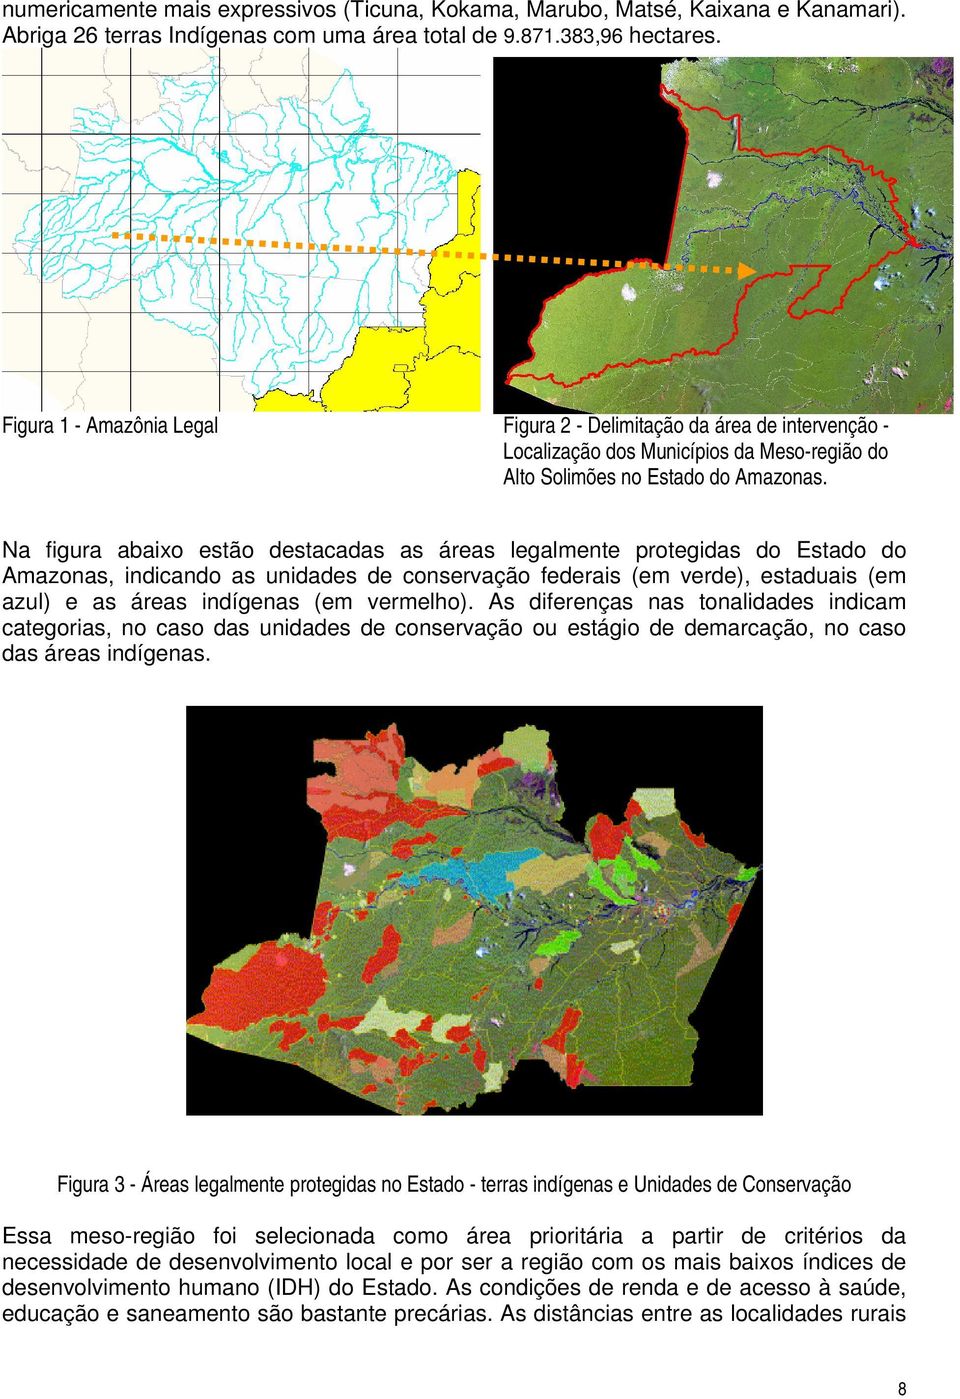 Na figura abaixo estão destacadas as áreas legalmente protegidas do Estado do Amazonas, indicando as unidades de conservação federais (em verde), estaduais (em azul) e as áreas indígenas (em